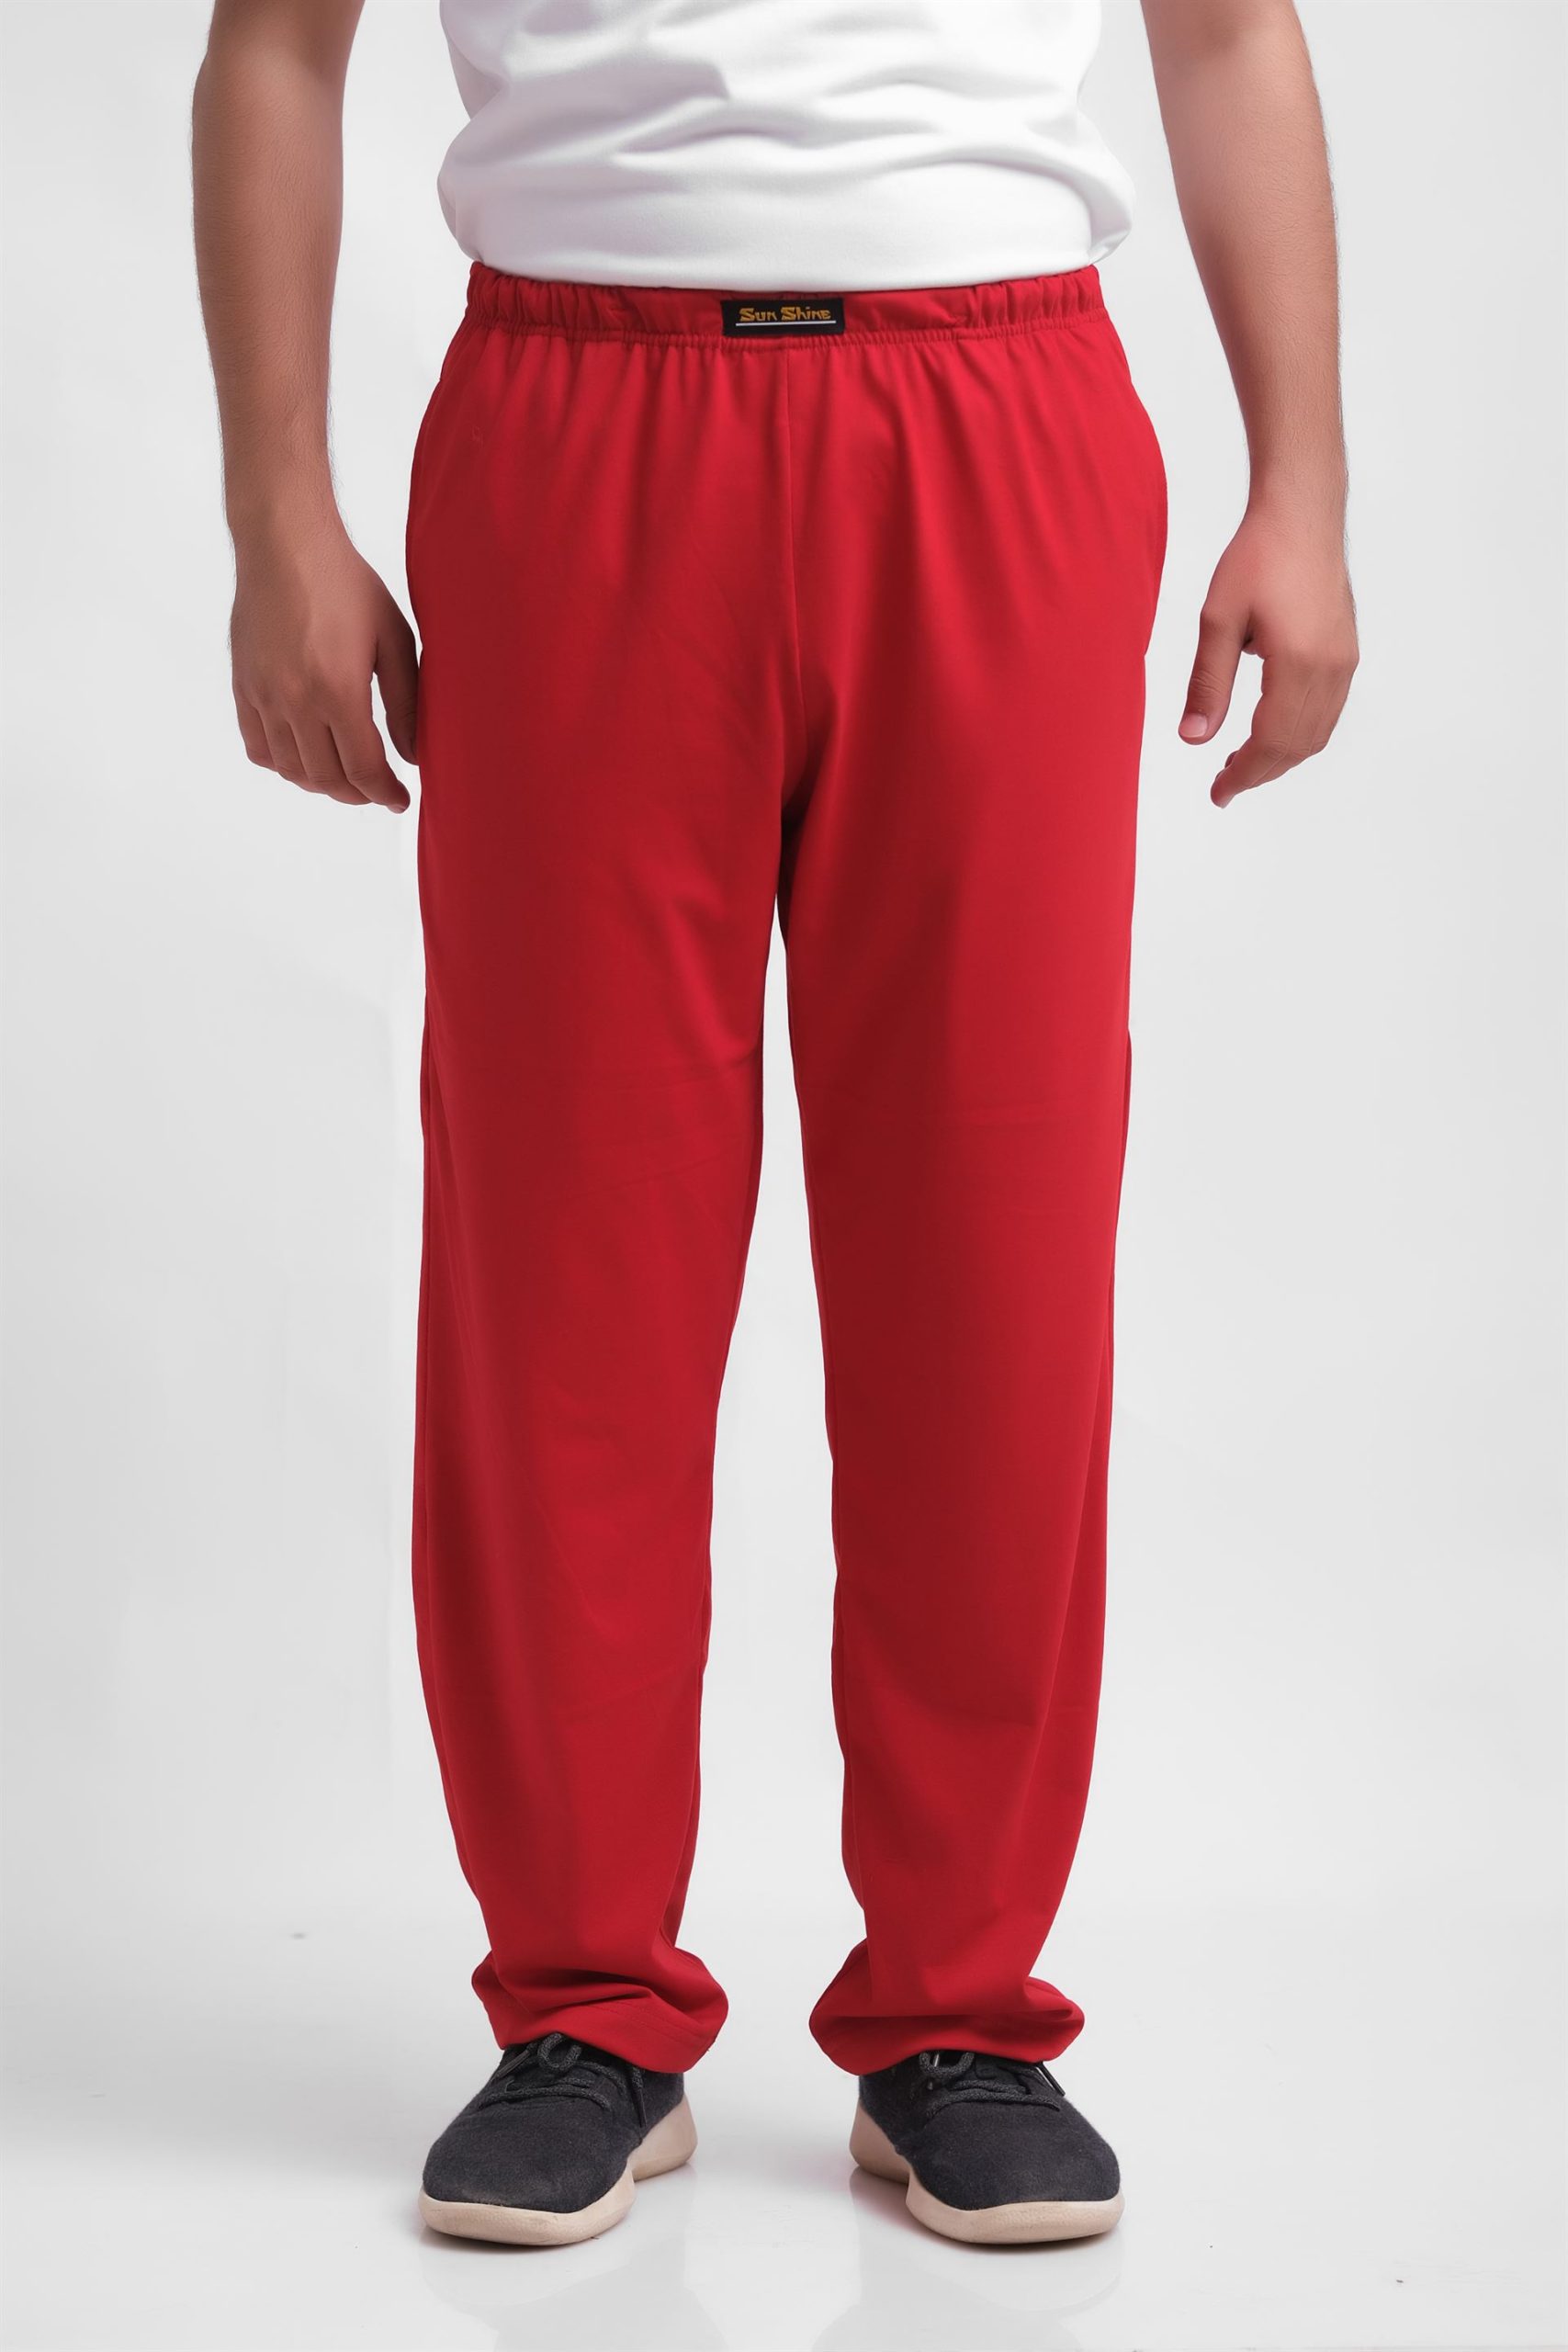 Jersey Pajama Pants Red | Pajamas - Nightwears